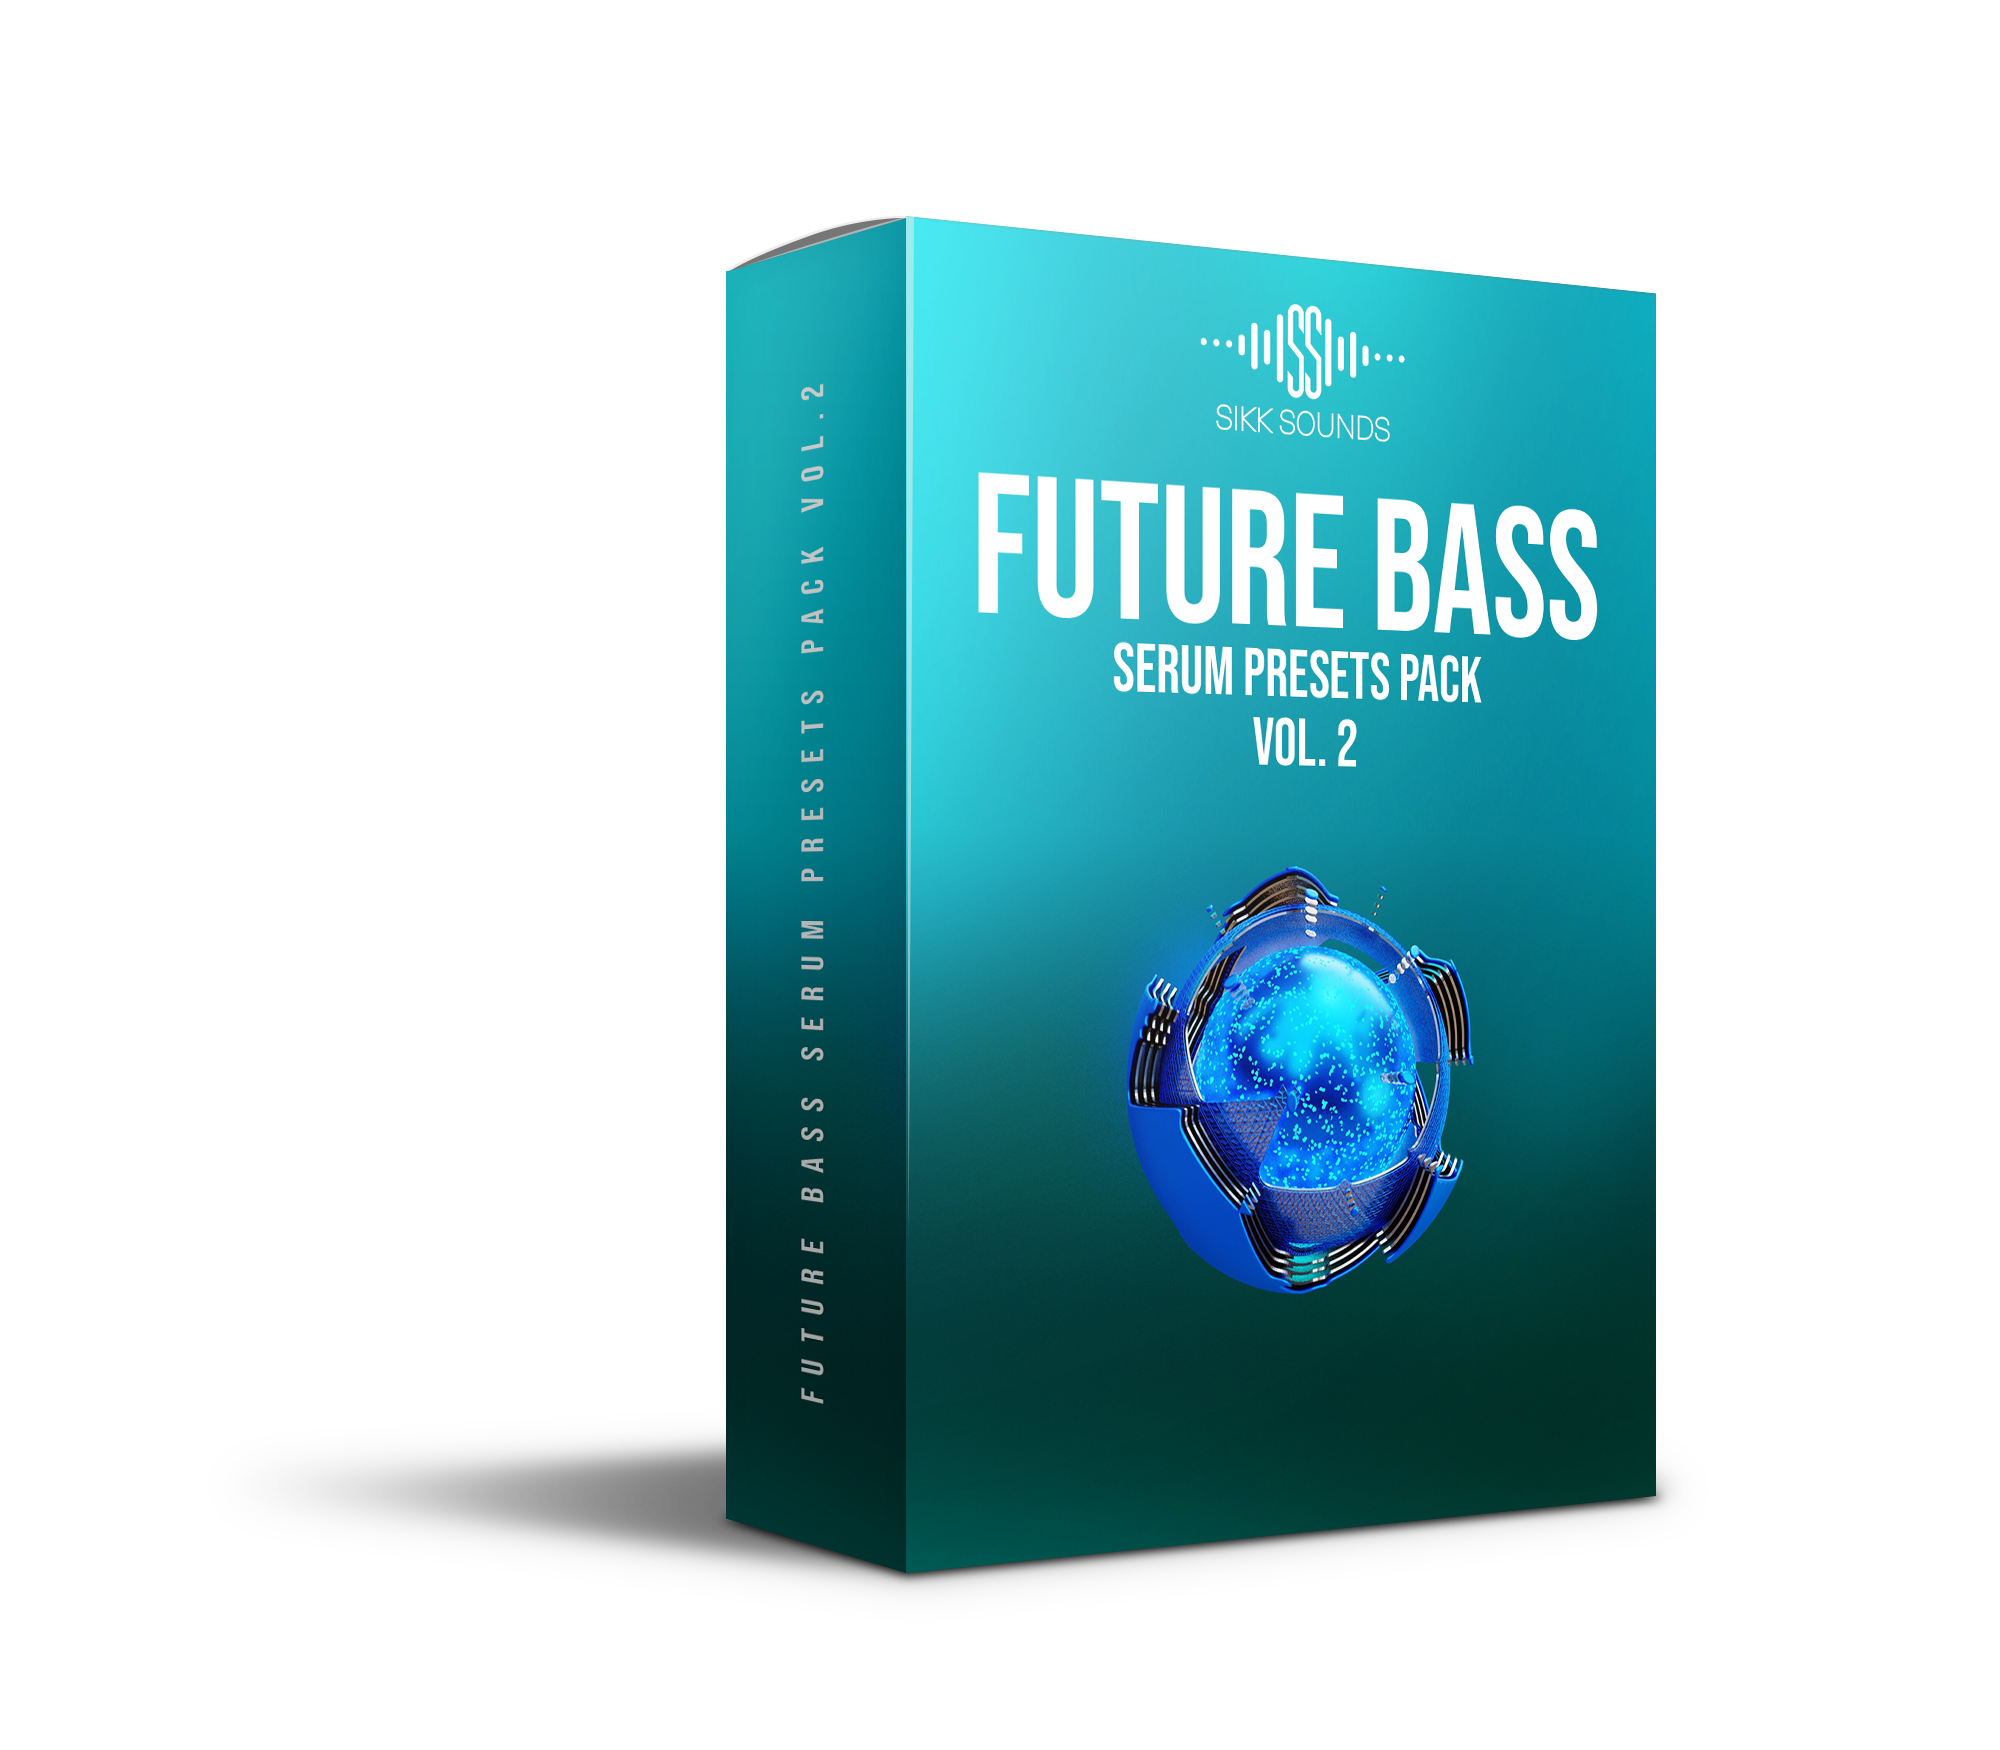 SiKKSounds Future Bass Serum Presets Vol.2